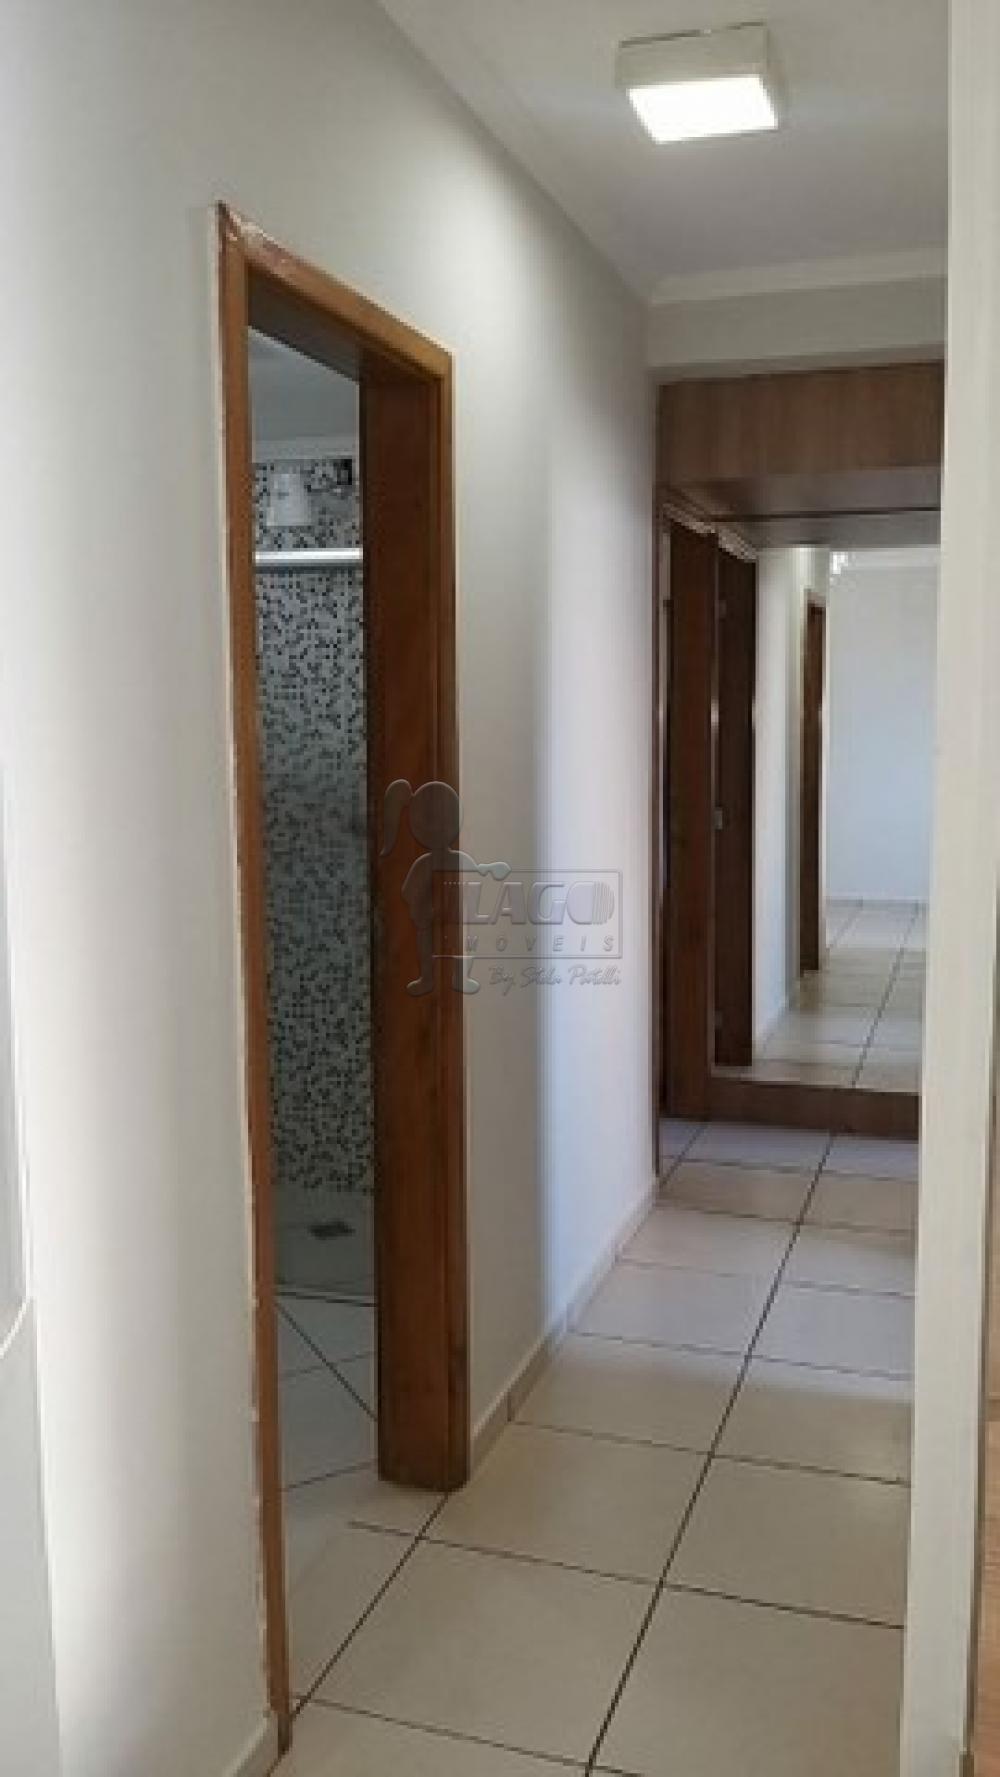 Comprar Apartamentos / Padrão em Ribeirão Preto R$ 220.000,00 - Foto 4